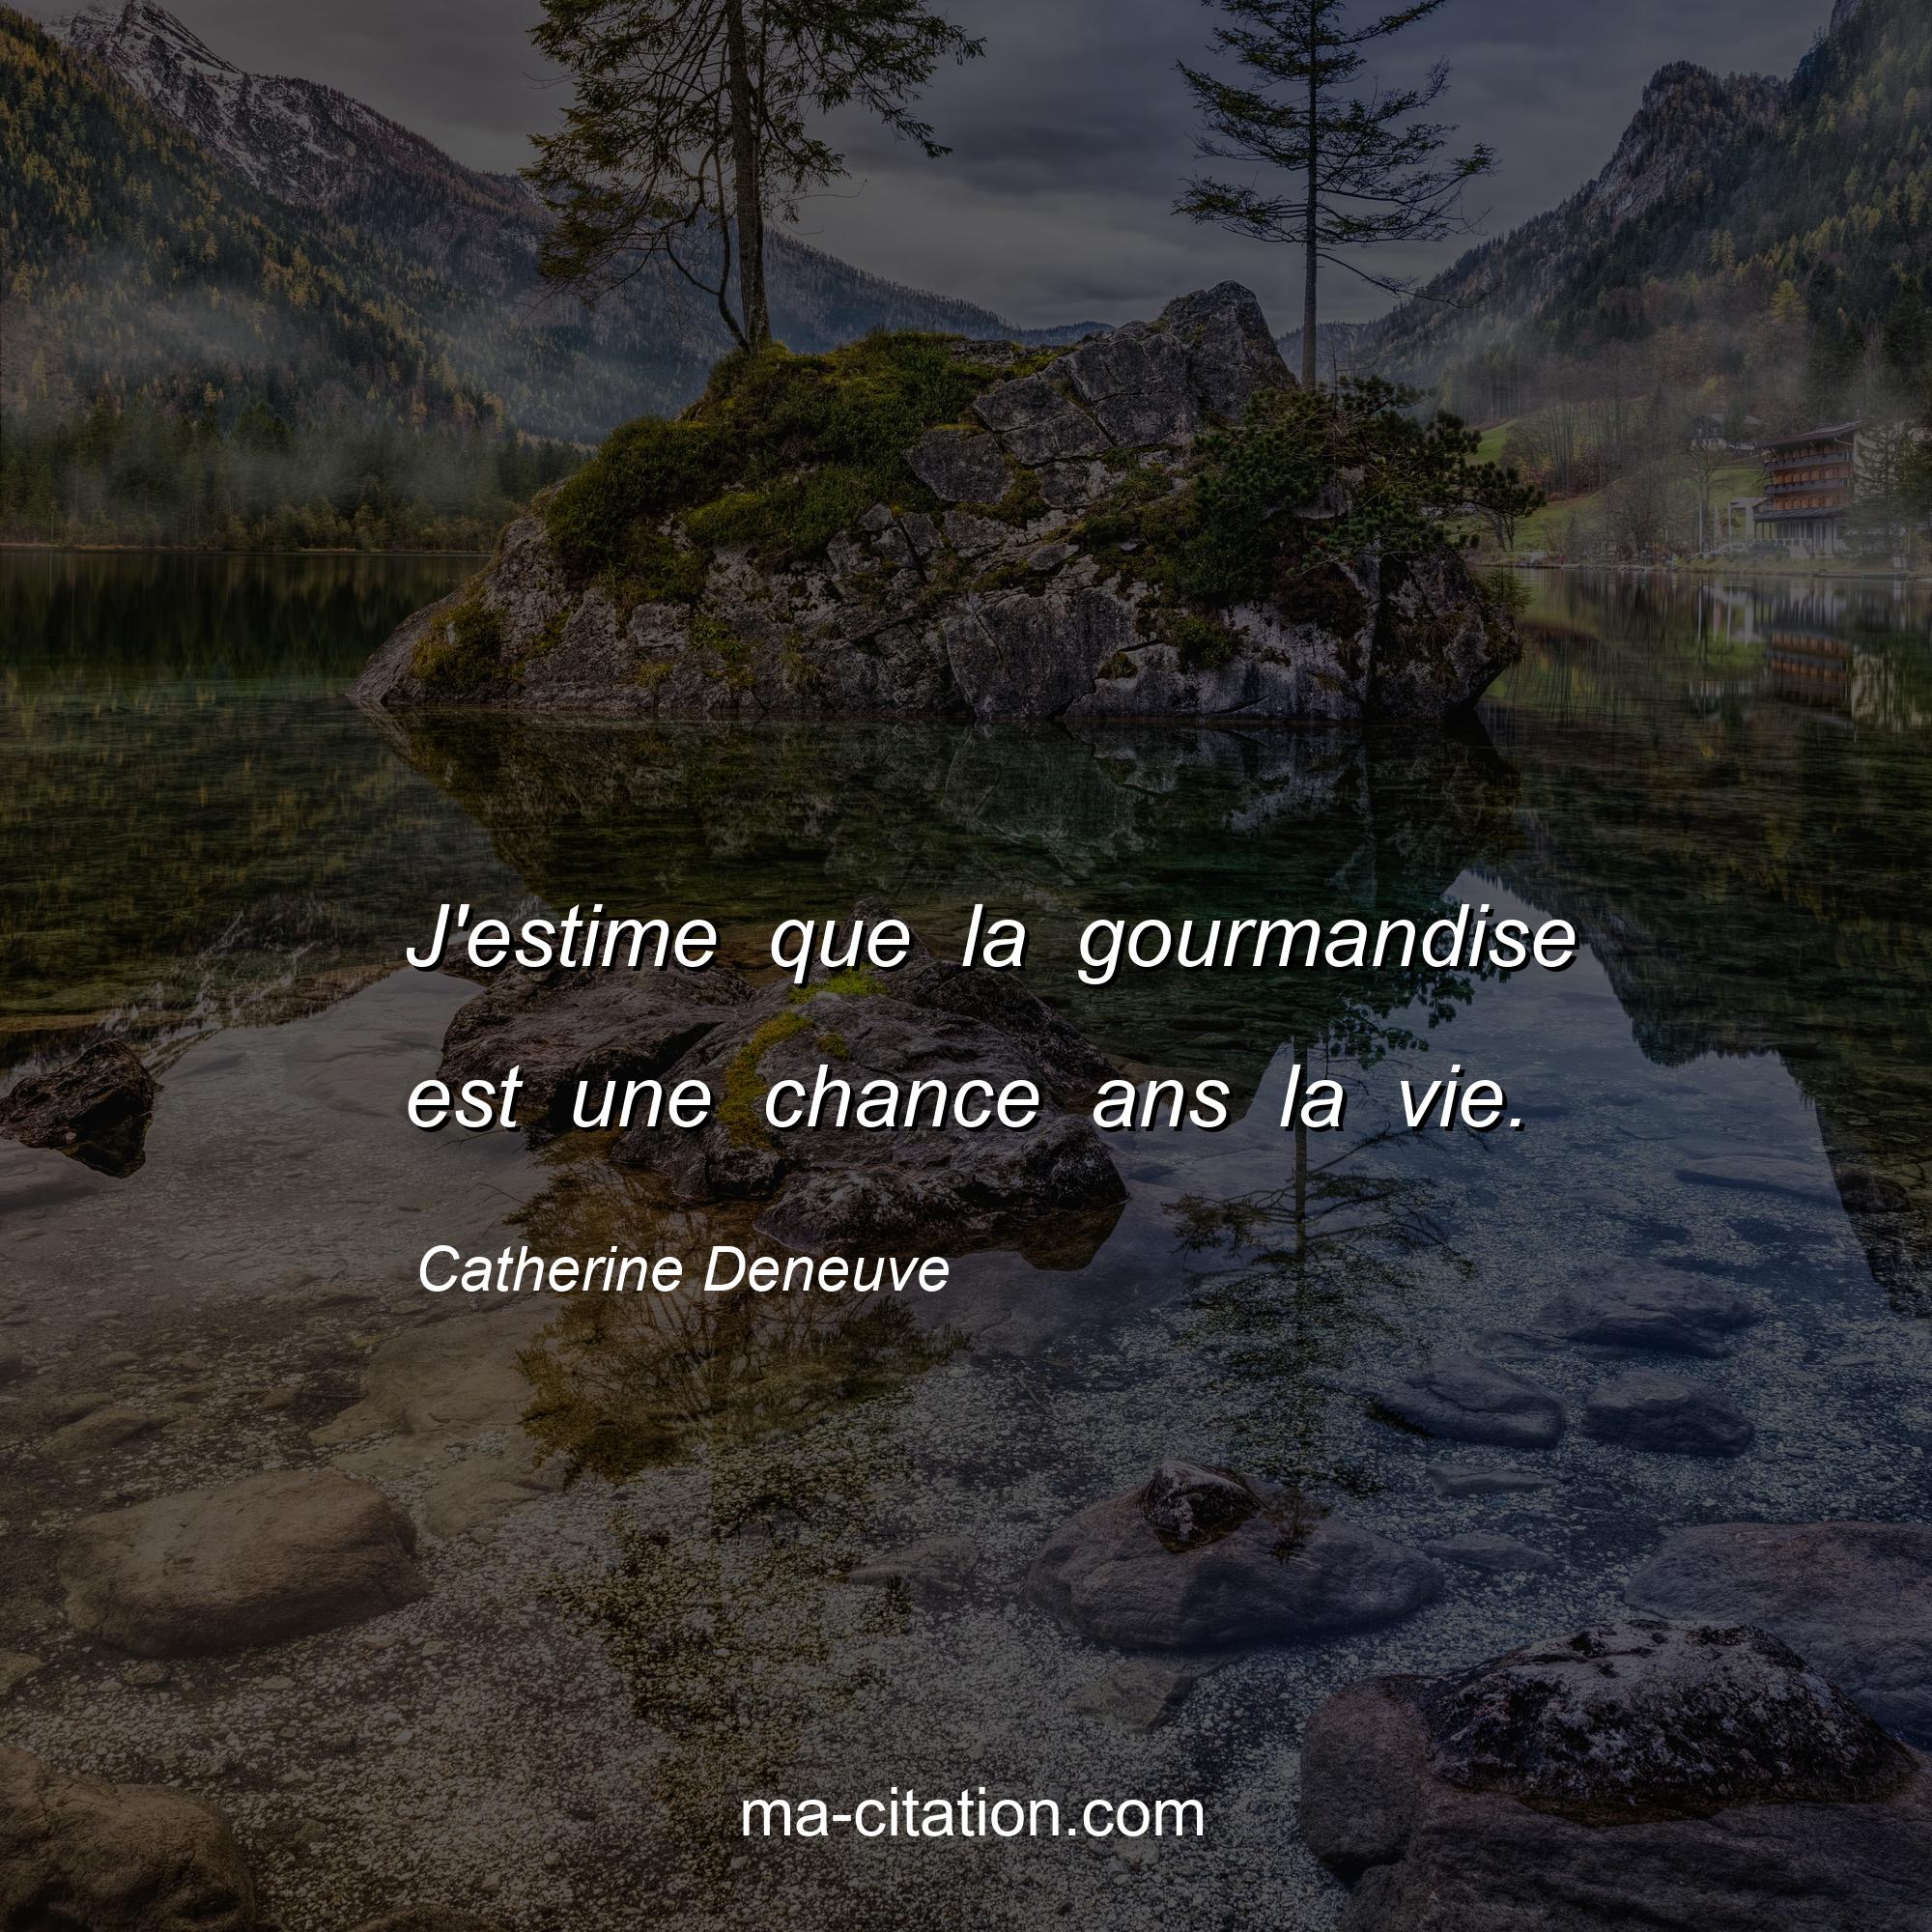 Catherine Deneuve : J'estime que la gourmandise est une chance ans la vie.